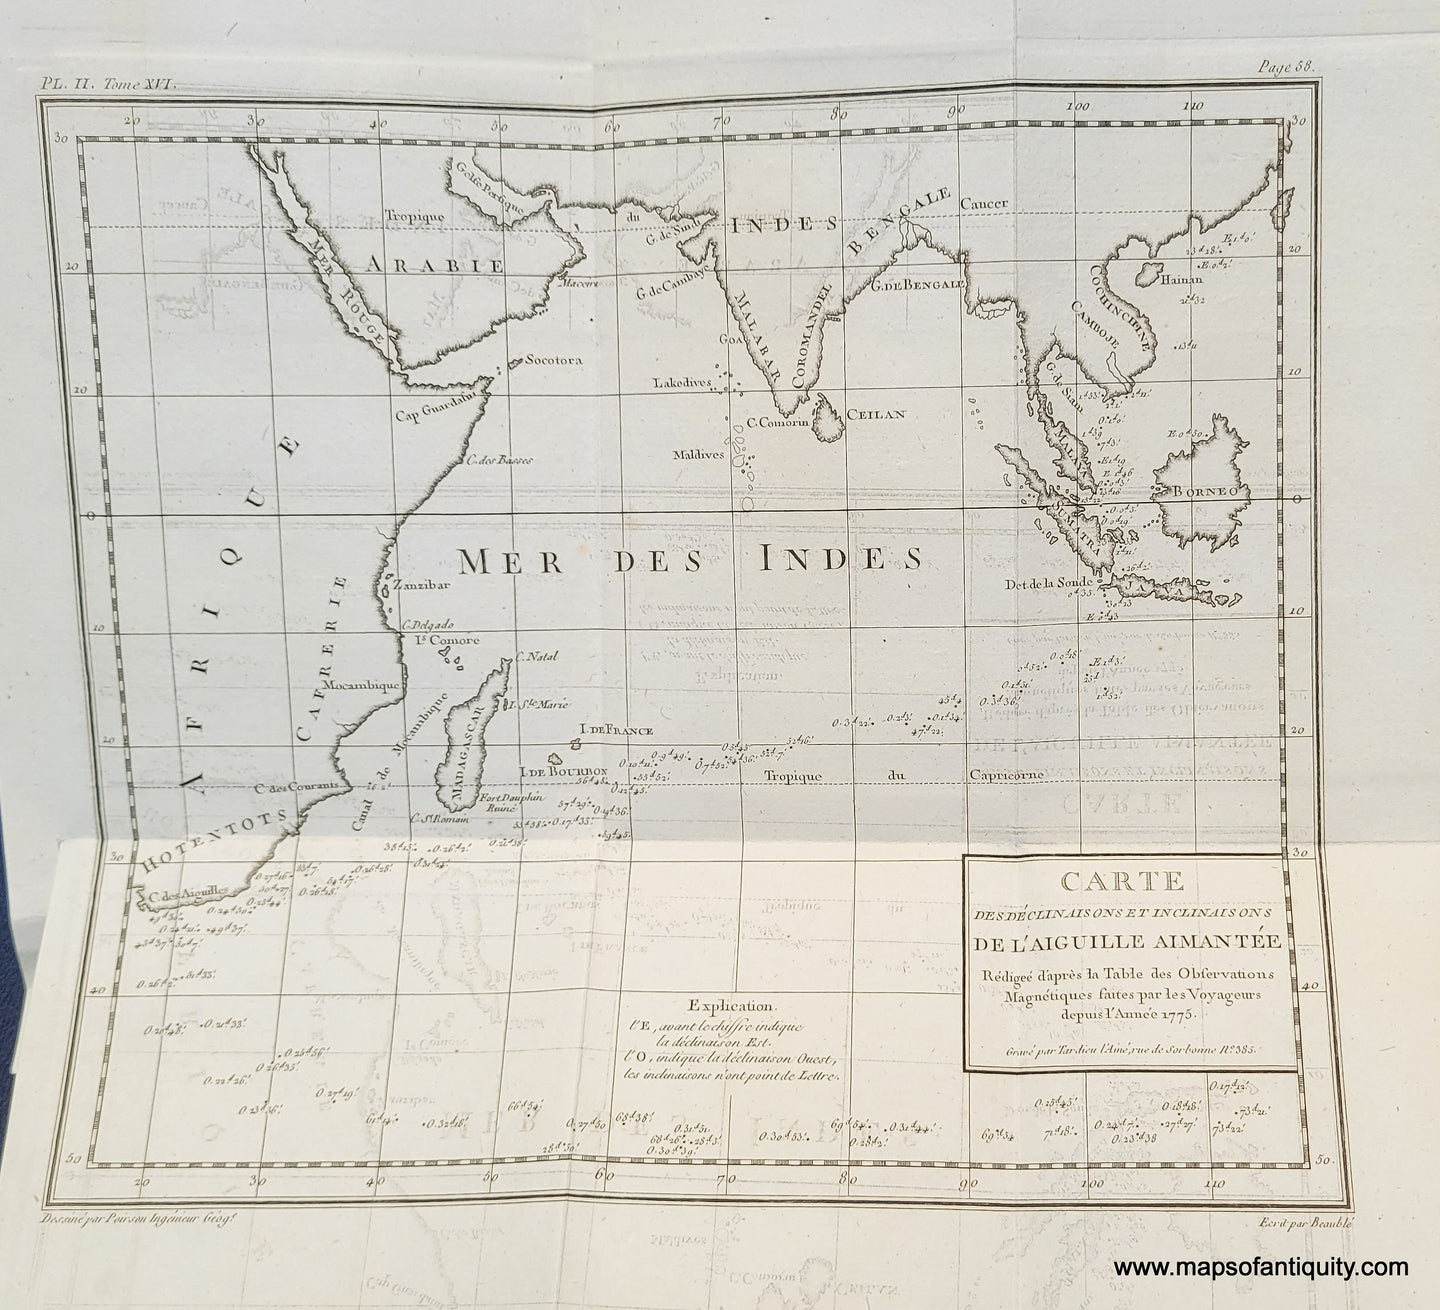 Genuine-Antique-Map-Indian-Ocean---Carte-des-Declinaisons-et-Inclinaisons-de-l'Aiguille-Aimantee-1795-Tardieu-Buffon-Maps-Of-Antiquity